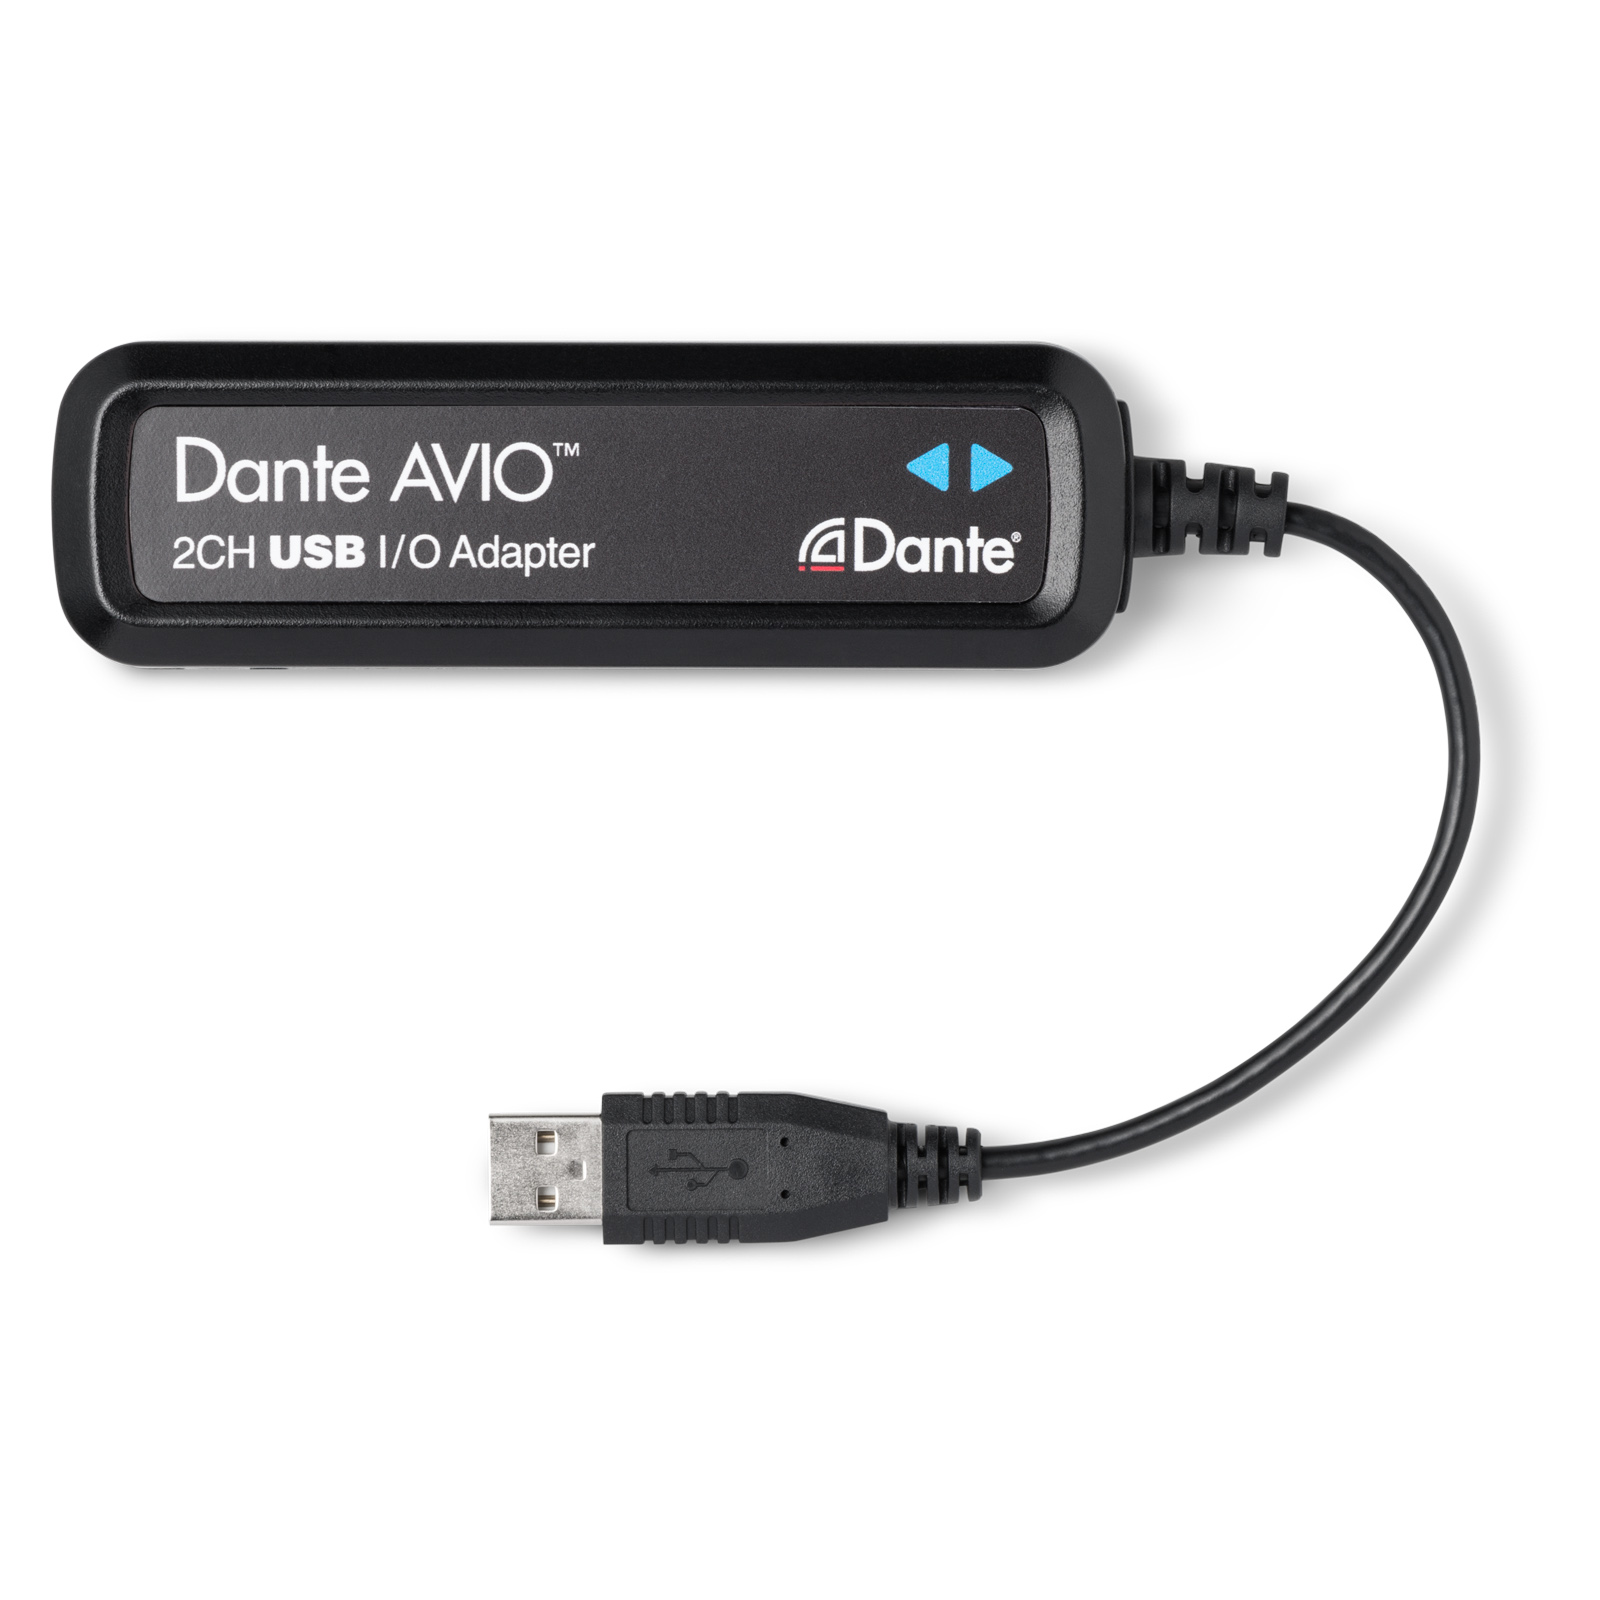 Dante AVIO - USB 2x2 адаптер для подключения к аудиосети Dante, 2 вх./2 вых. канала, 